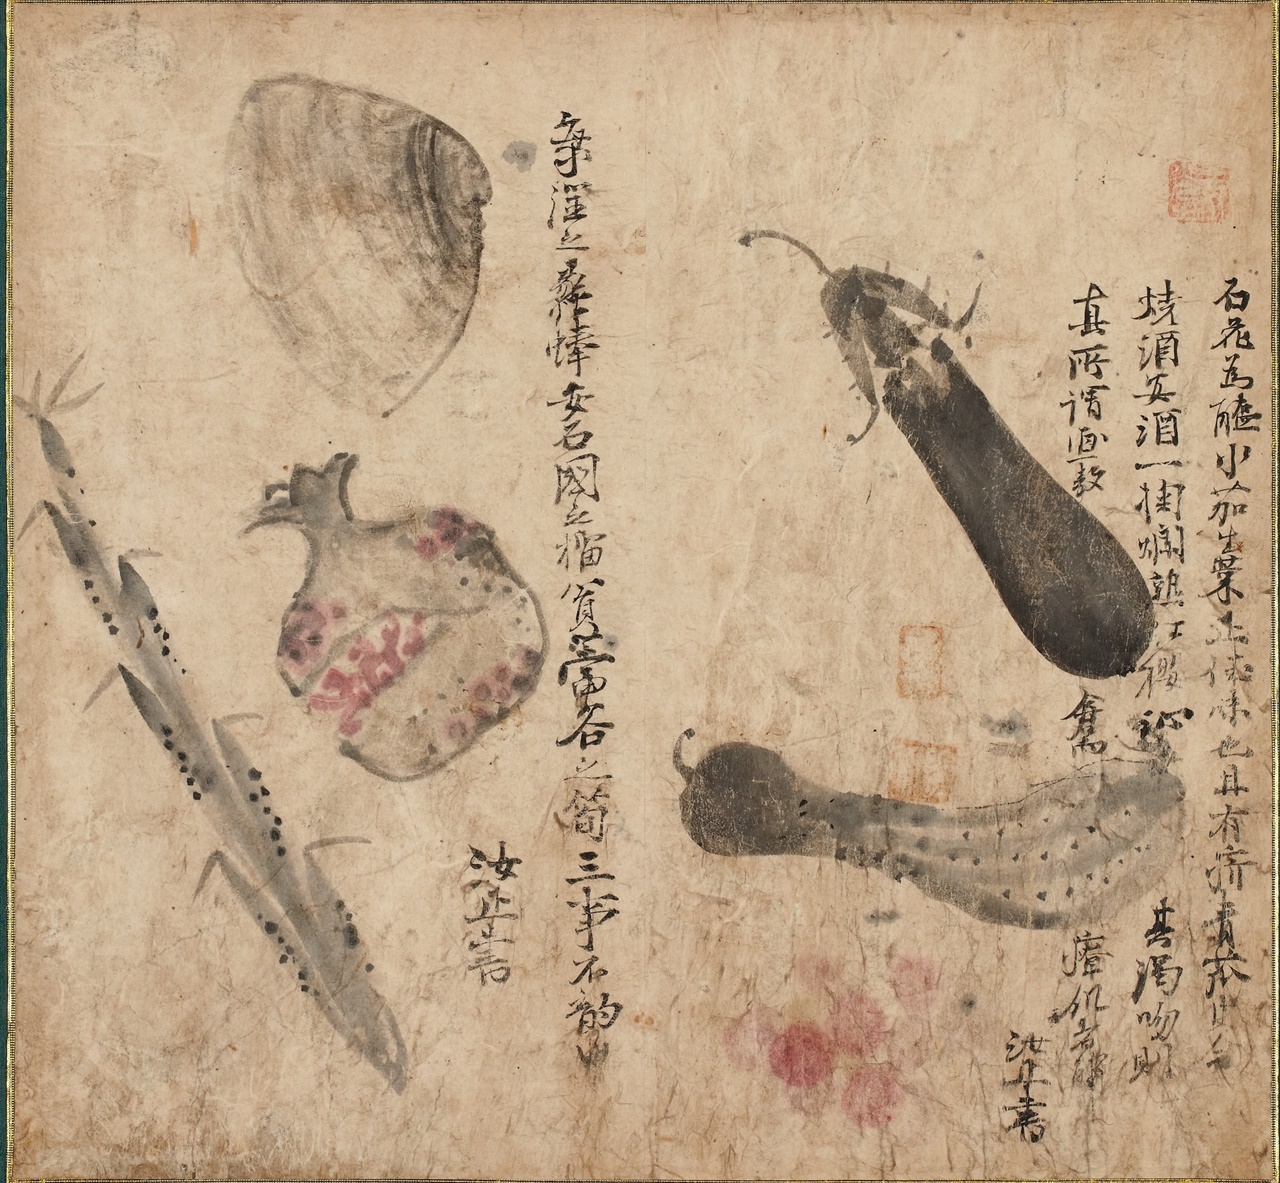 강세황, 18세기, 종이에 채색, 25.6x27.4cm